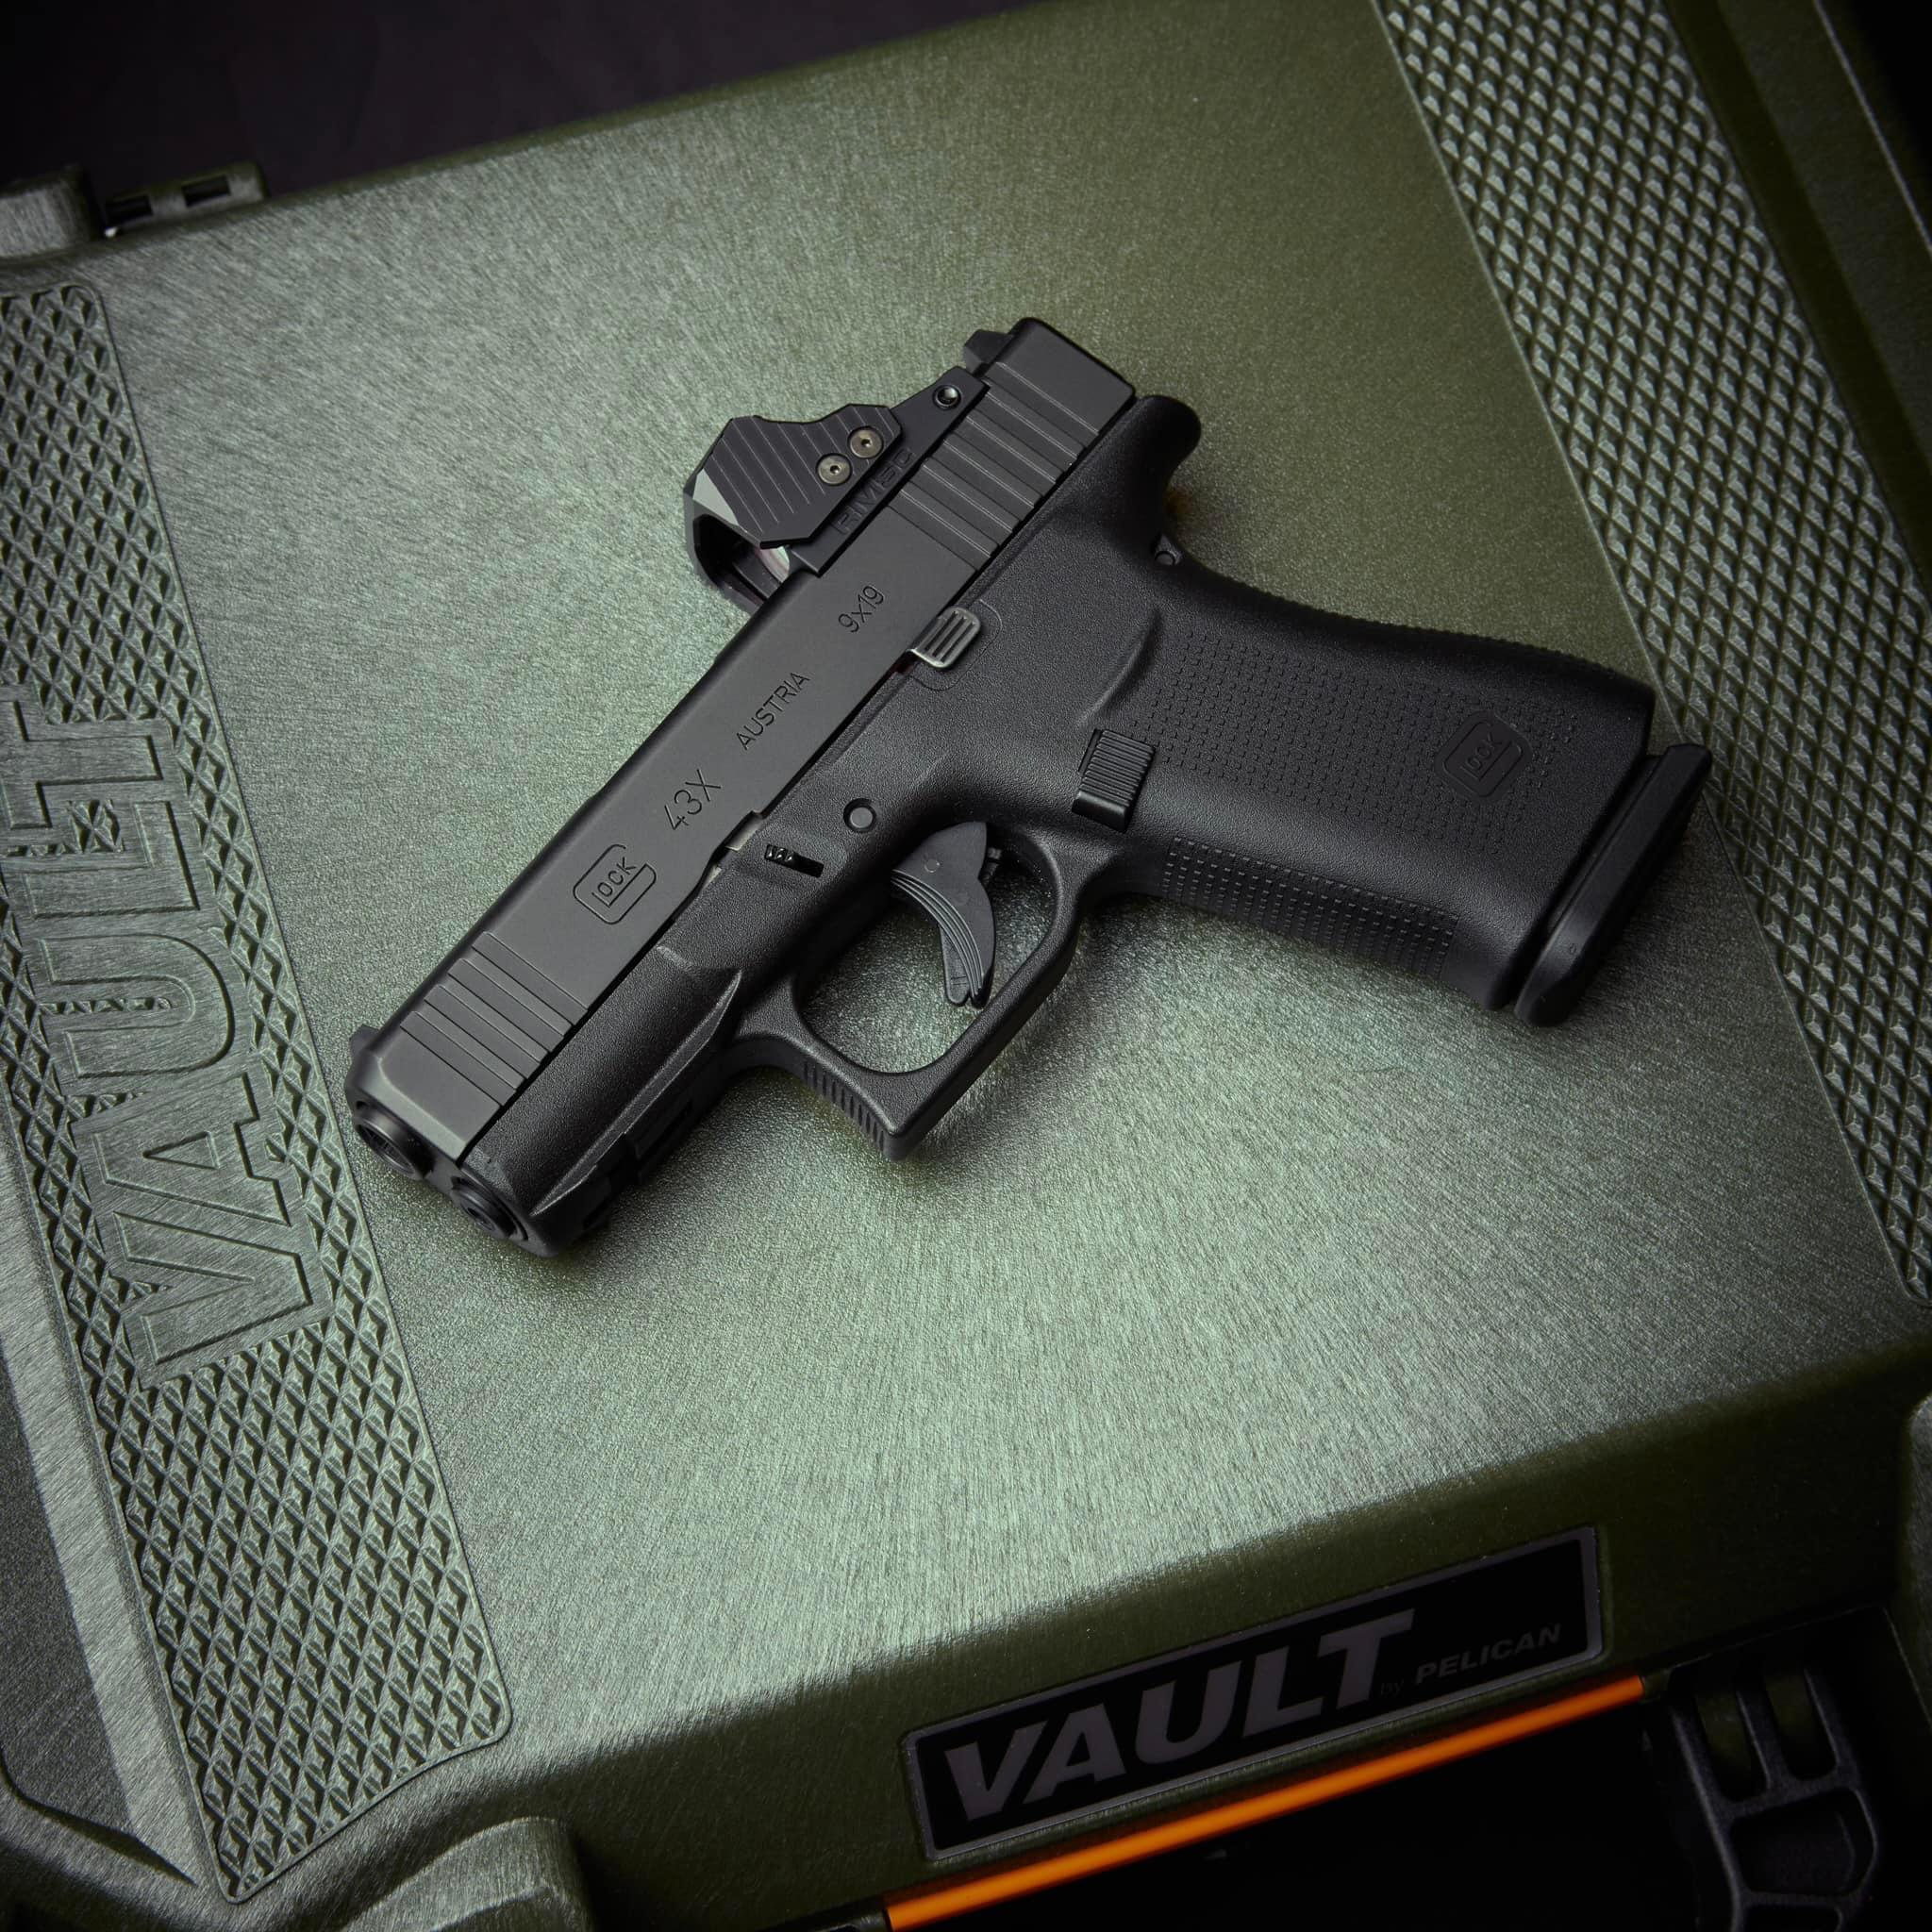 The Glock 43X